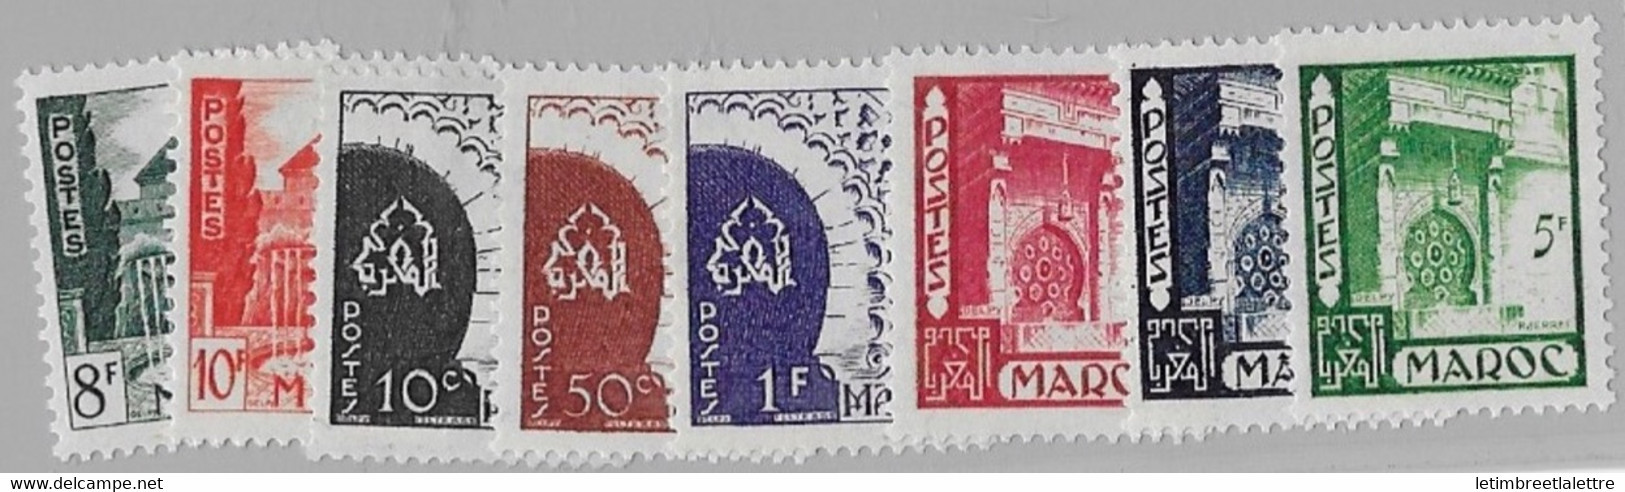 ⭐ Maroc - YT N° 277 à 284 ** - Neuf Sans Charnière - 1949 ⭐ - Unused Stamps